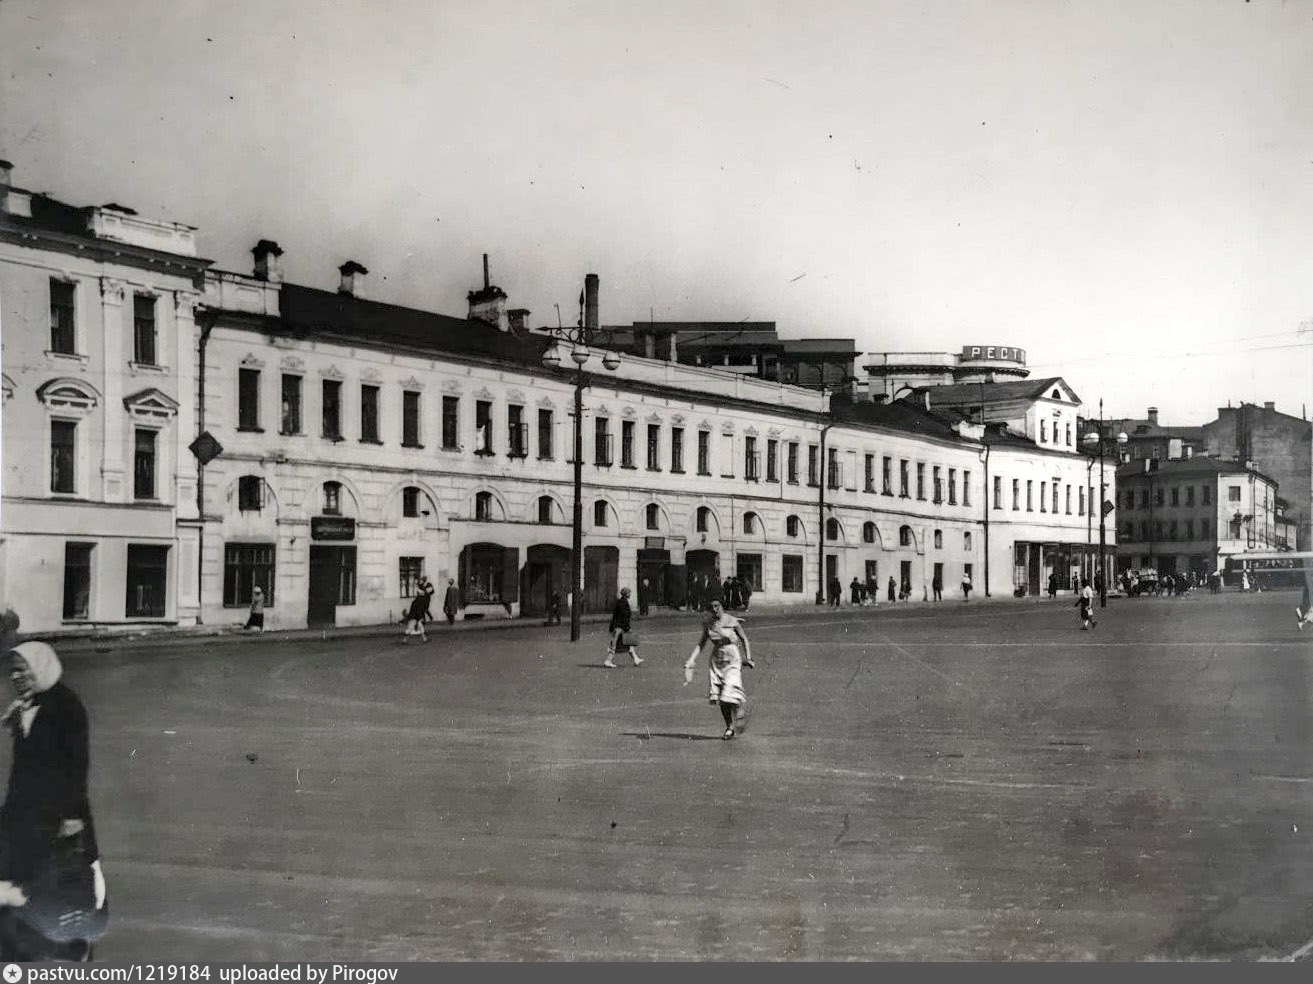 Арбатская площадь 1930. Москва Арбат 1935. Арбат 1935 года. Арбатская площадь Москва. Художественный арбатская площадь 14